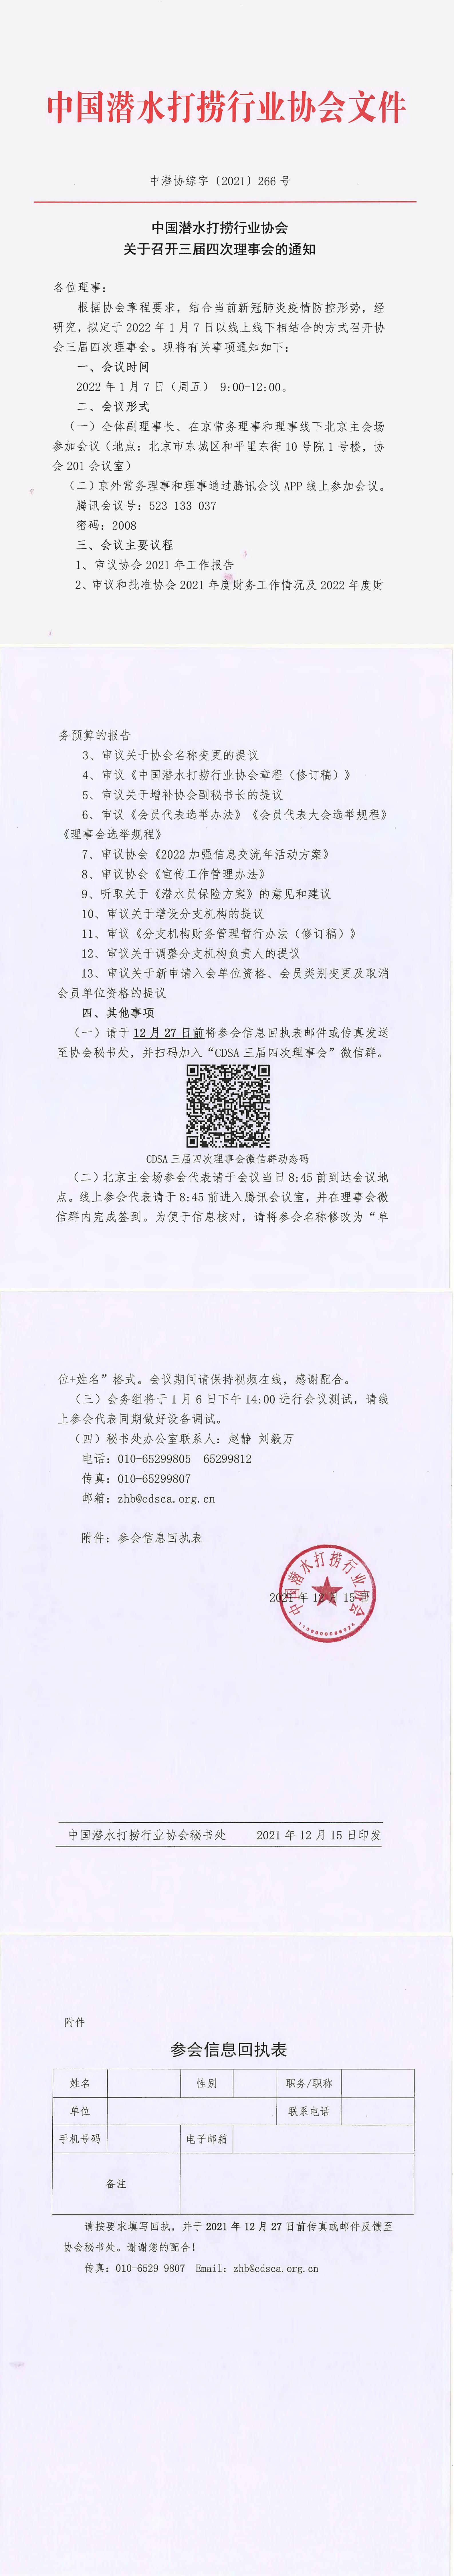 中国潜水打捞行业协会关于召开三届四次理事会的通知_00.jpg